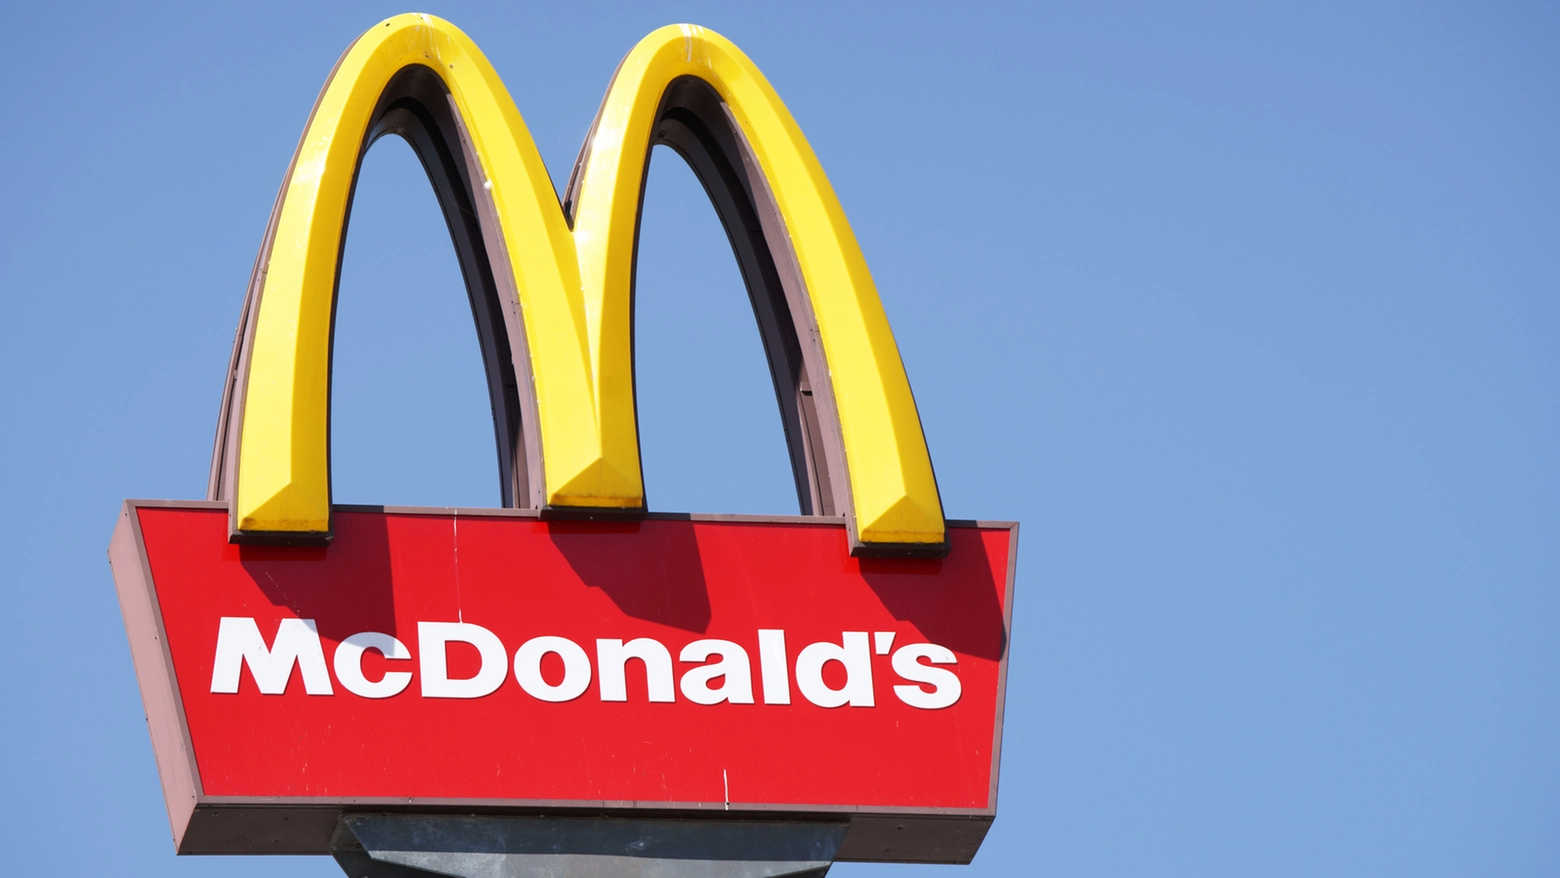 Un nuovo McDonald's a Castel San Pietro Terme: si cercano 25 candidati per il punto vendita